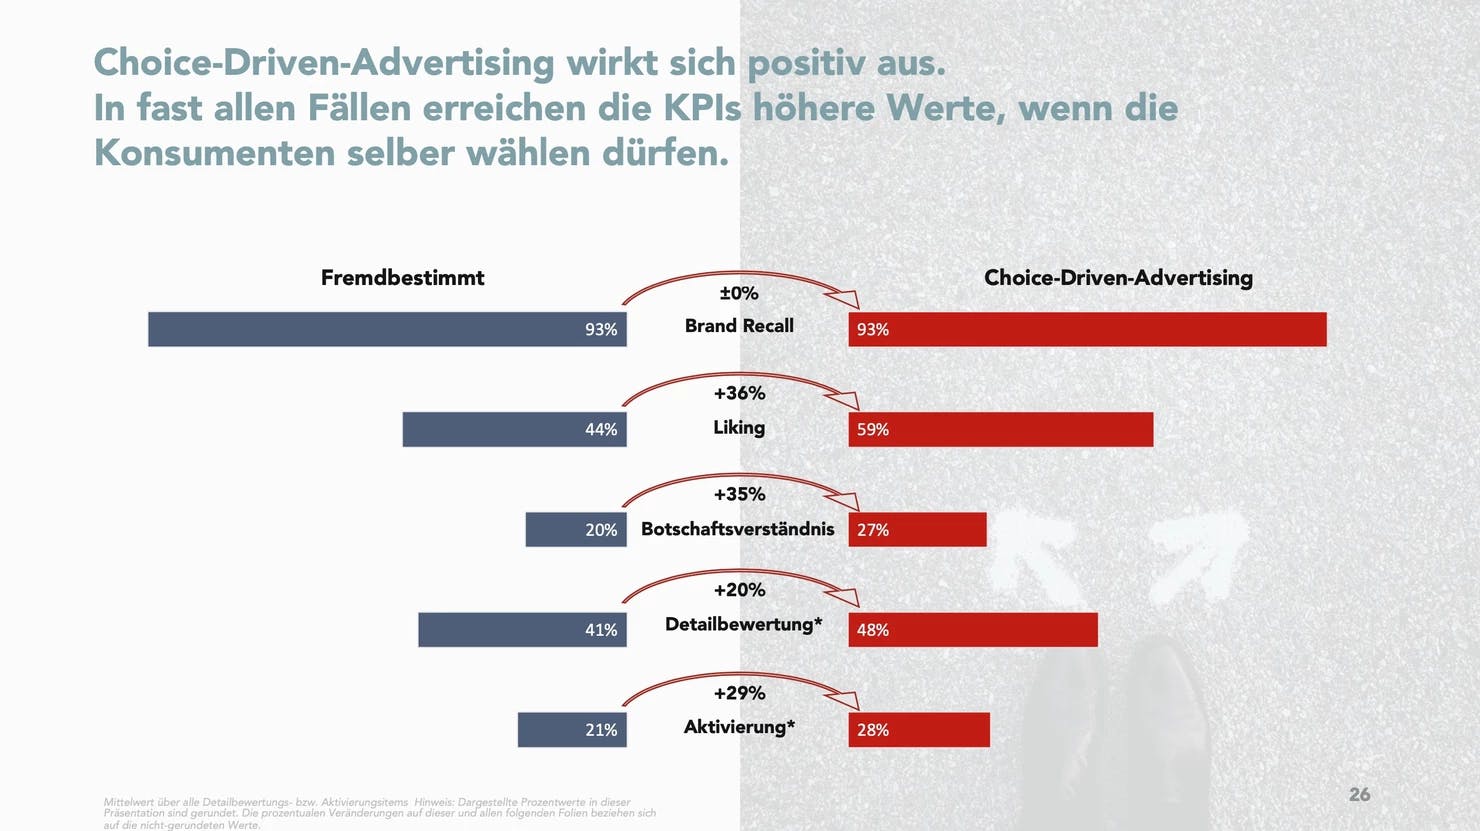 Heading:" Choice-Driven-Advertising wirkt sich positiv aus. In fast allen Fällen erreichen die KPIs höhere Werte, wenn die Konsumenten selber wählen dürfen." 